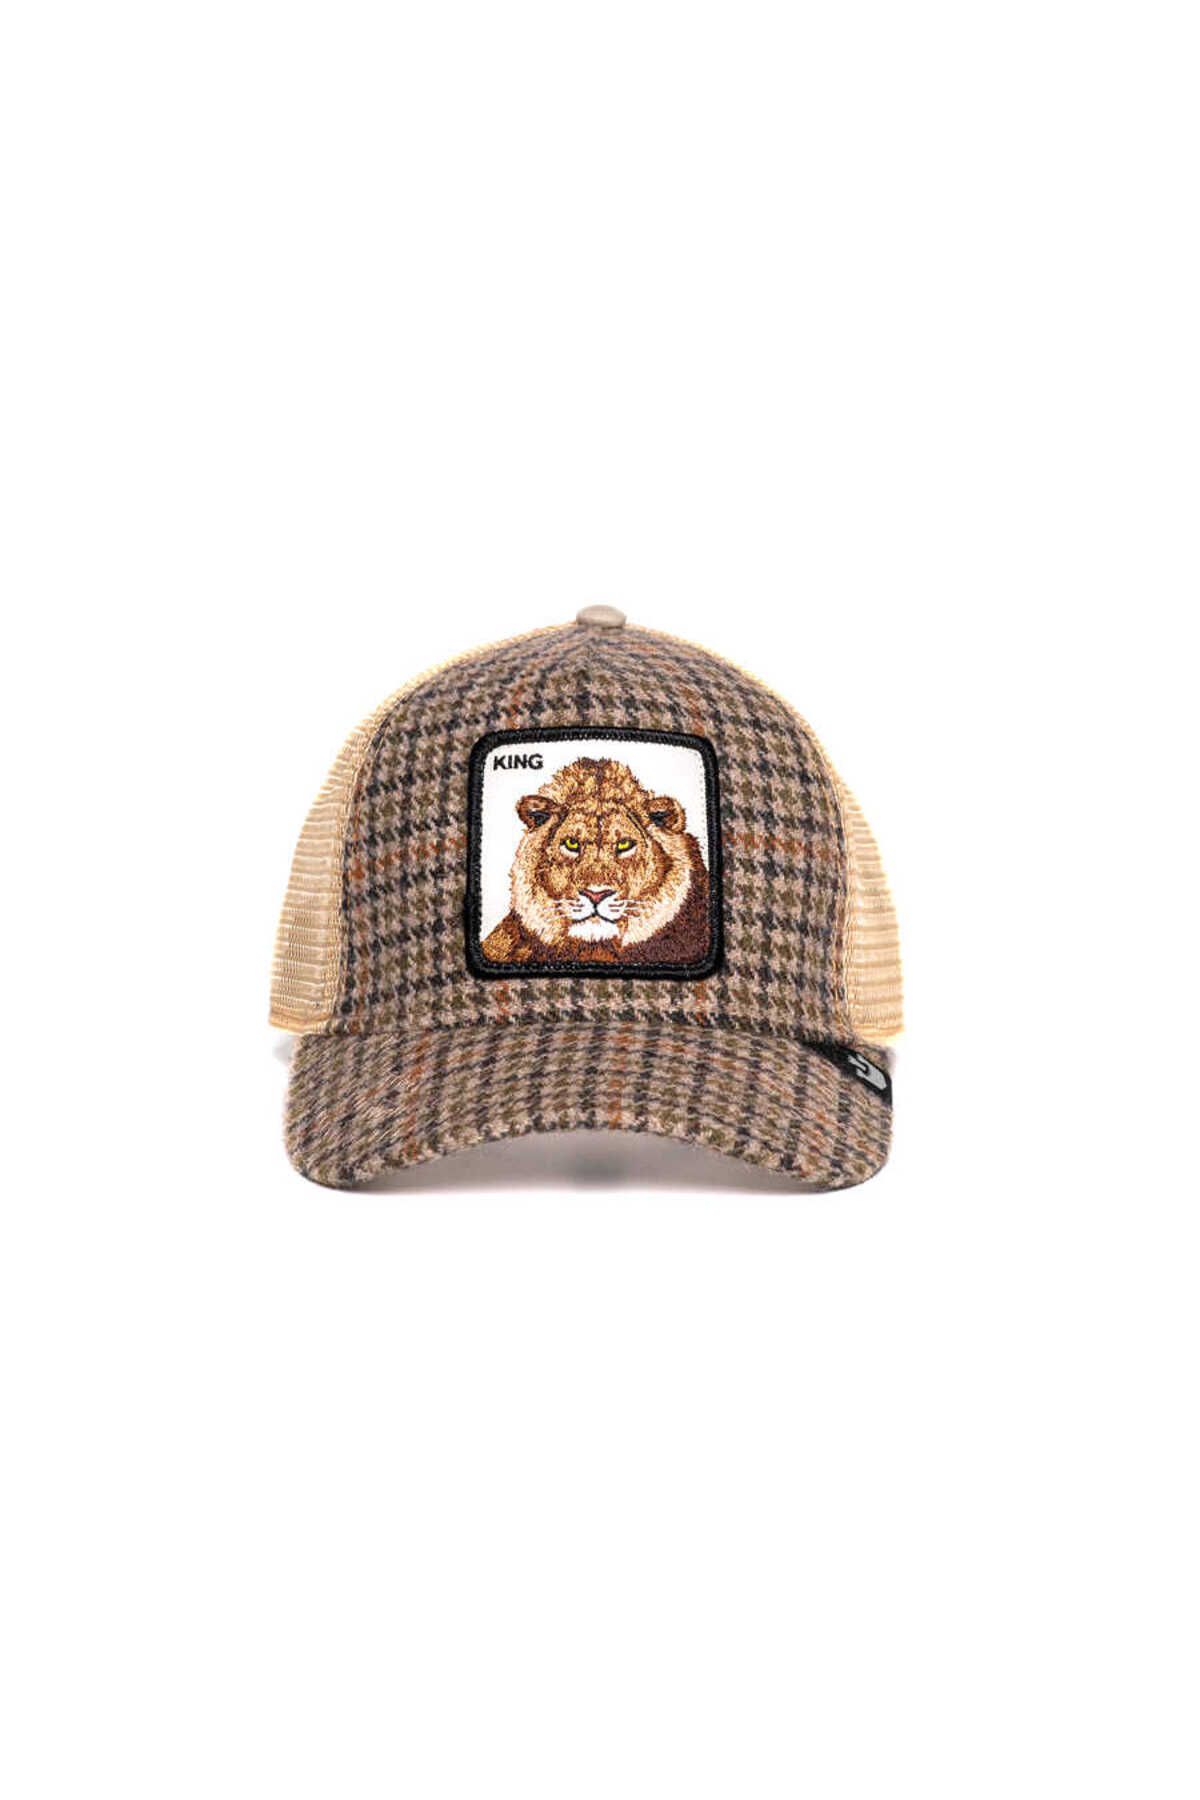 Goorin Bros . Lodge King ( Aslan Figürlü ) Şapka 101-0286